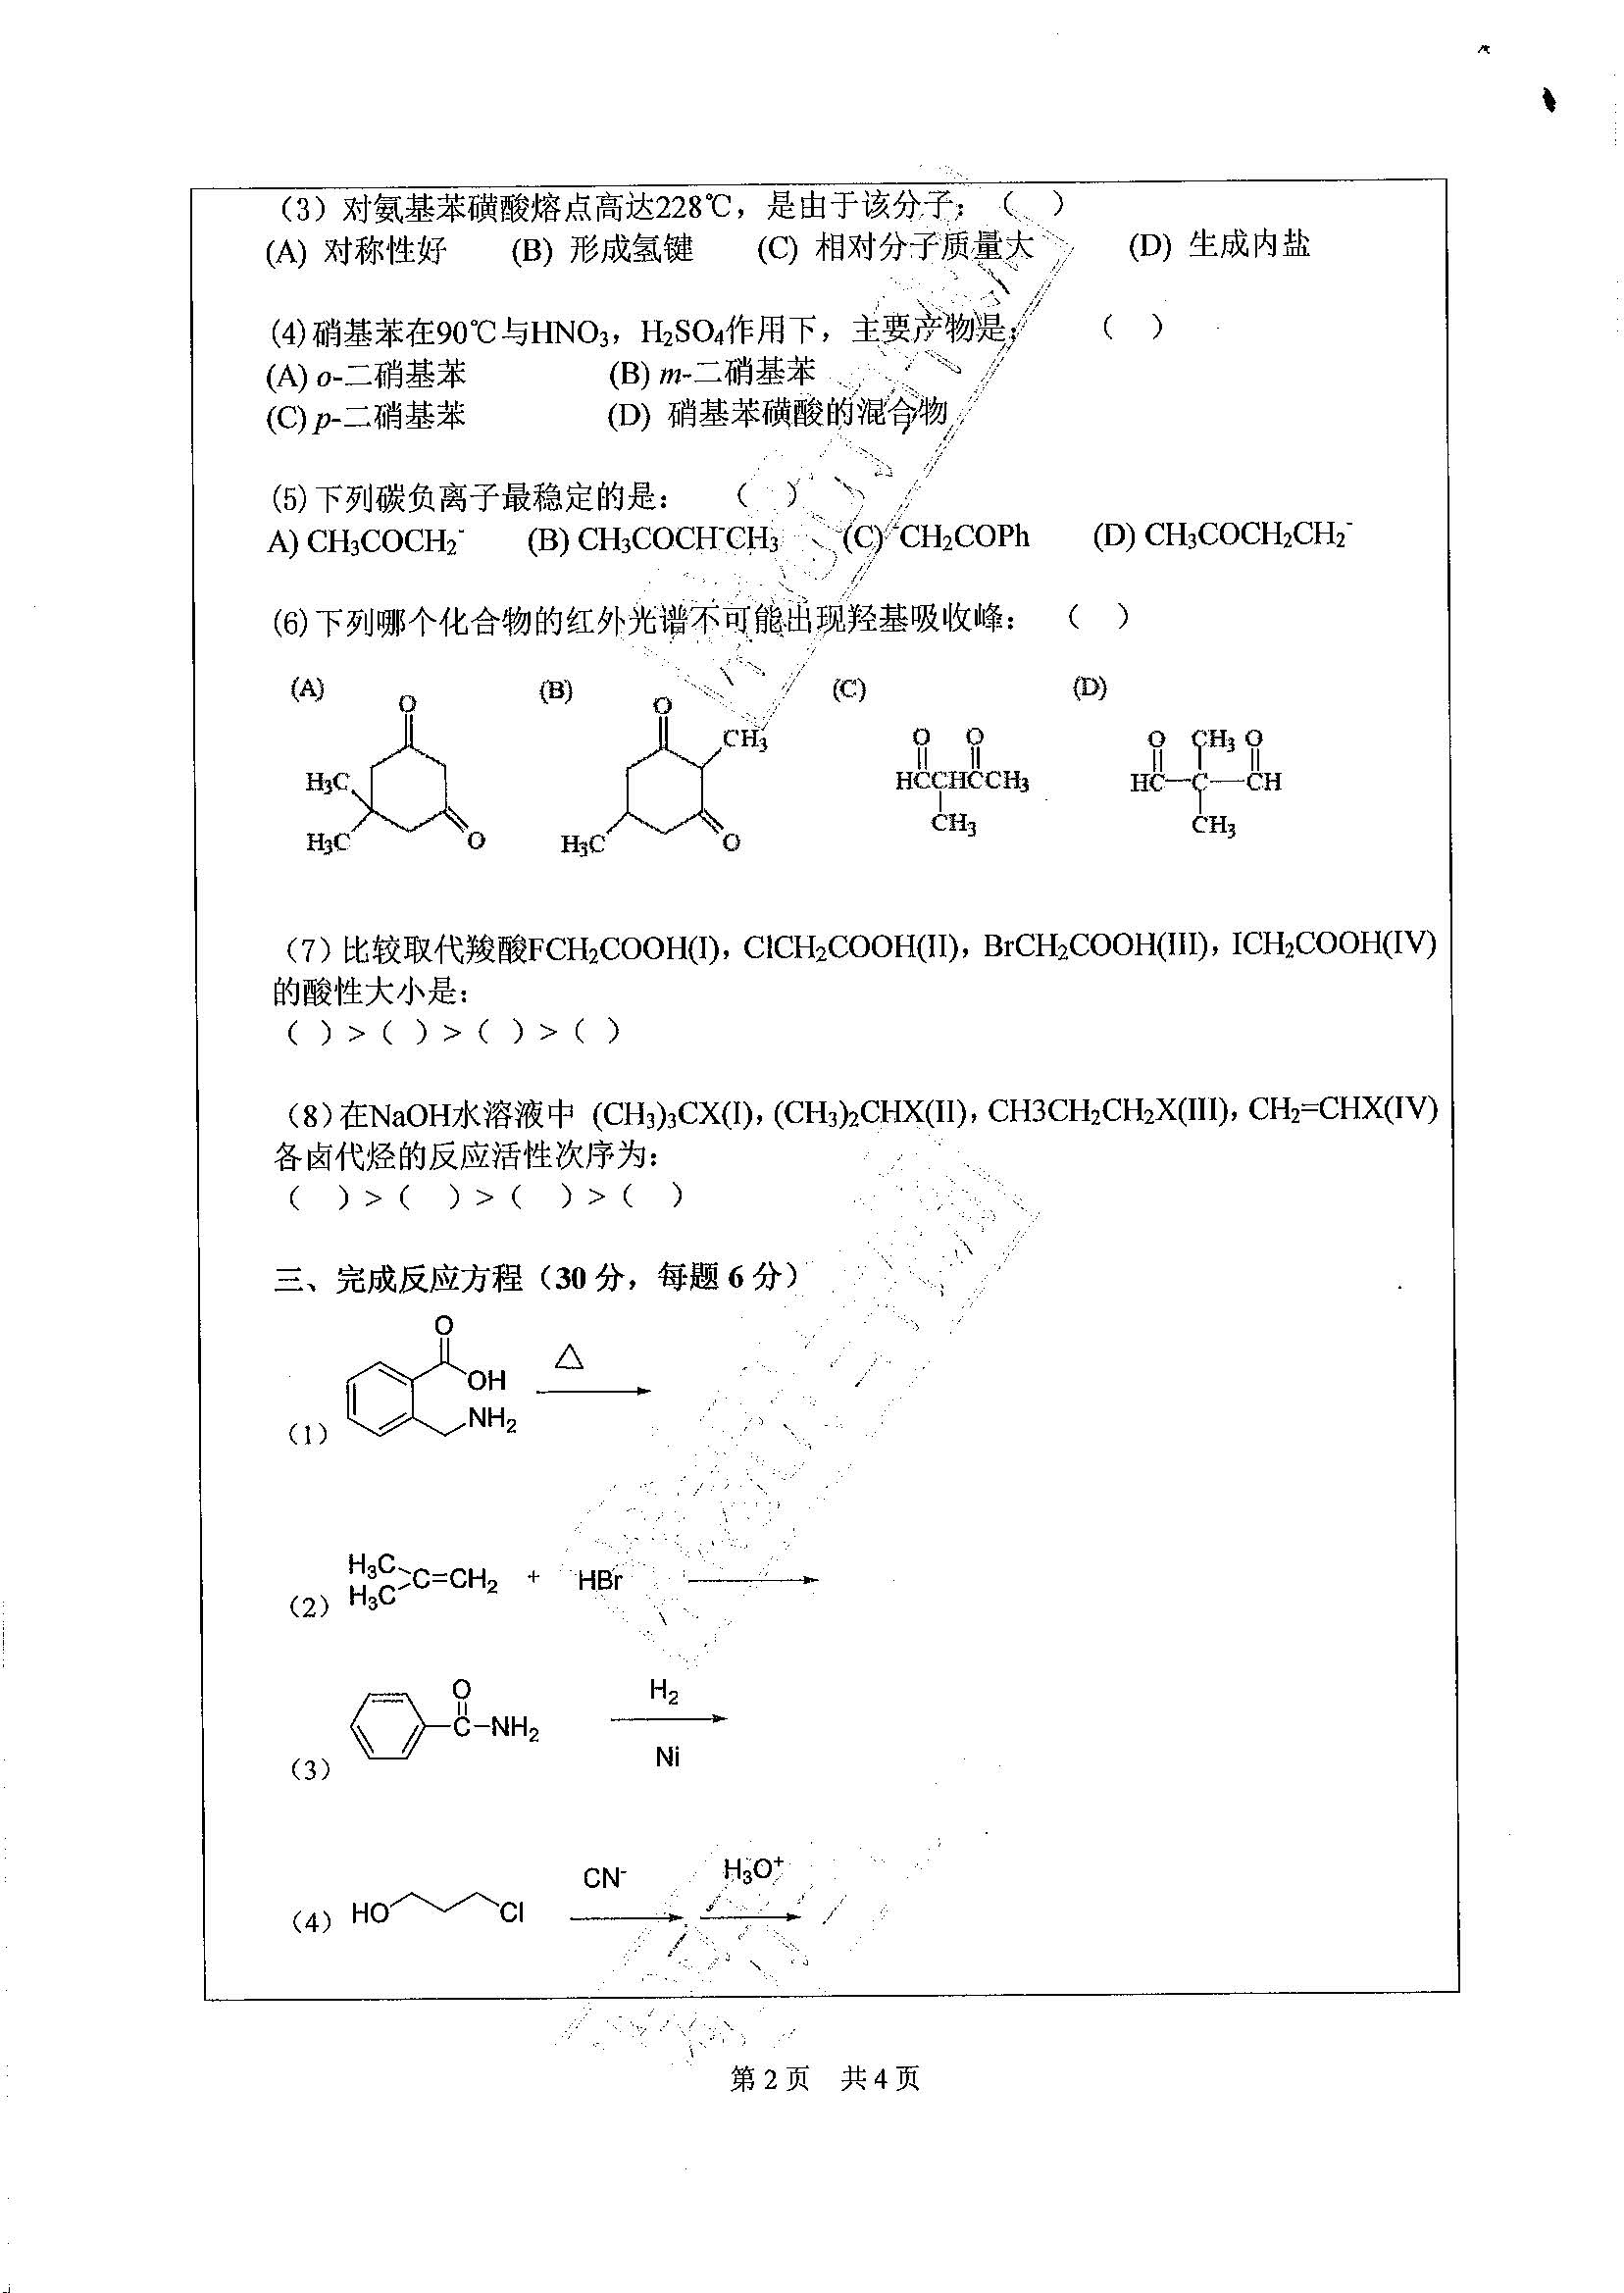 867基础有机化学2020年考研初试试卷真题（广东工业大学）